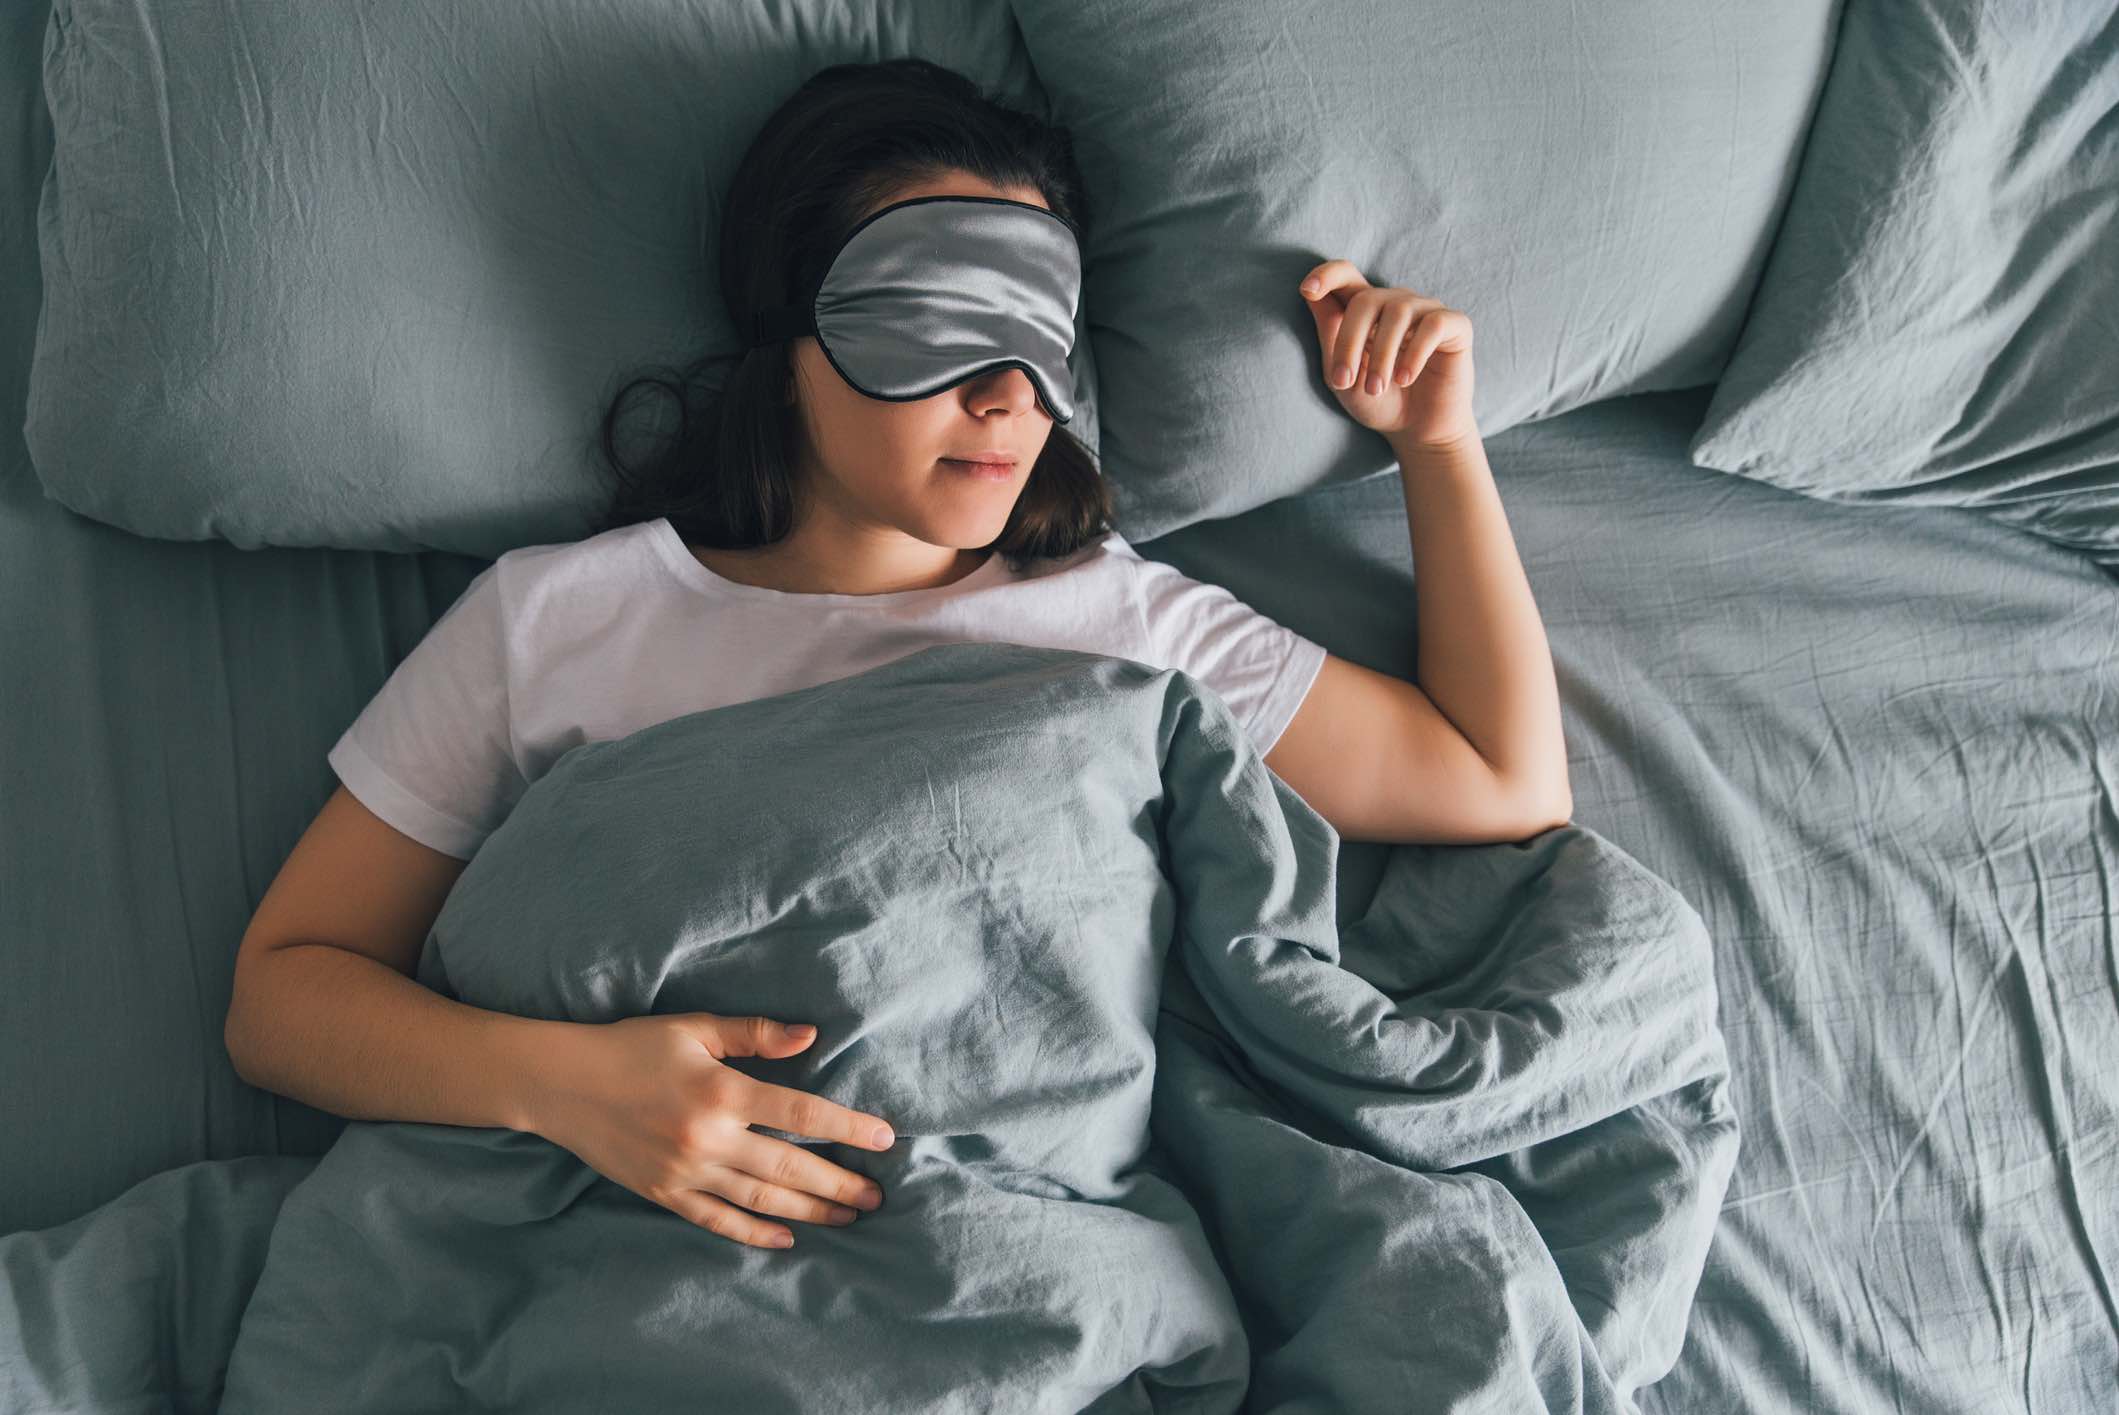 Ποιες είναι οι λέξεις που μπορούν να φέρουν έναν καλύτερο ύπνο;